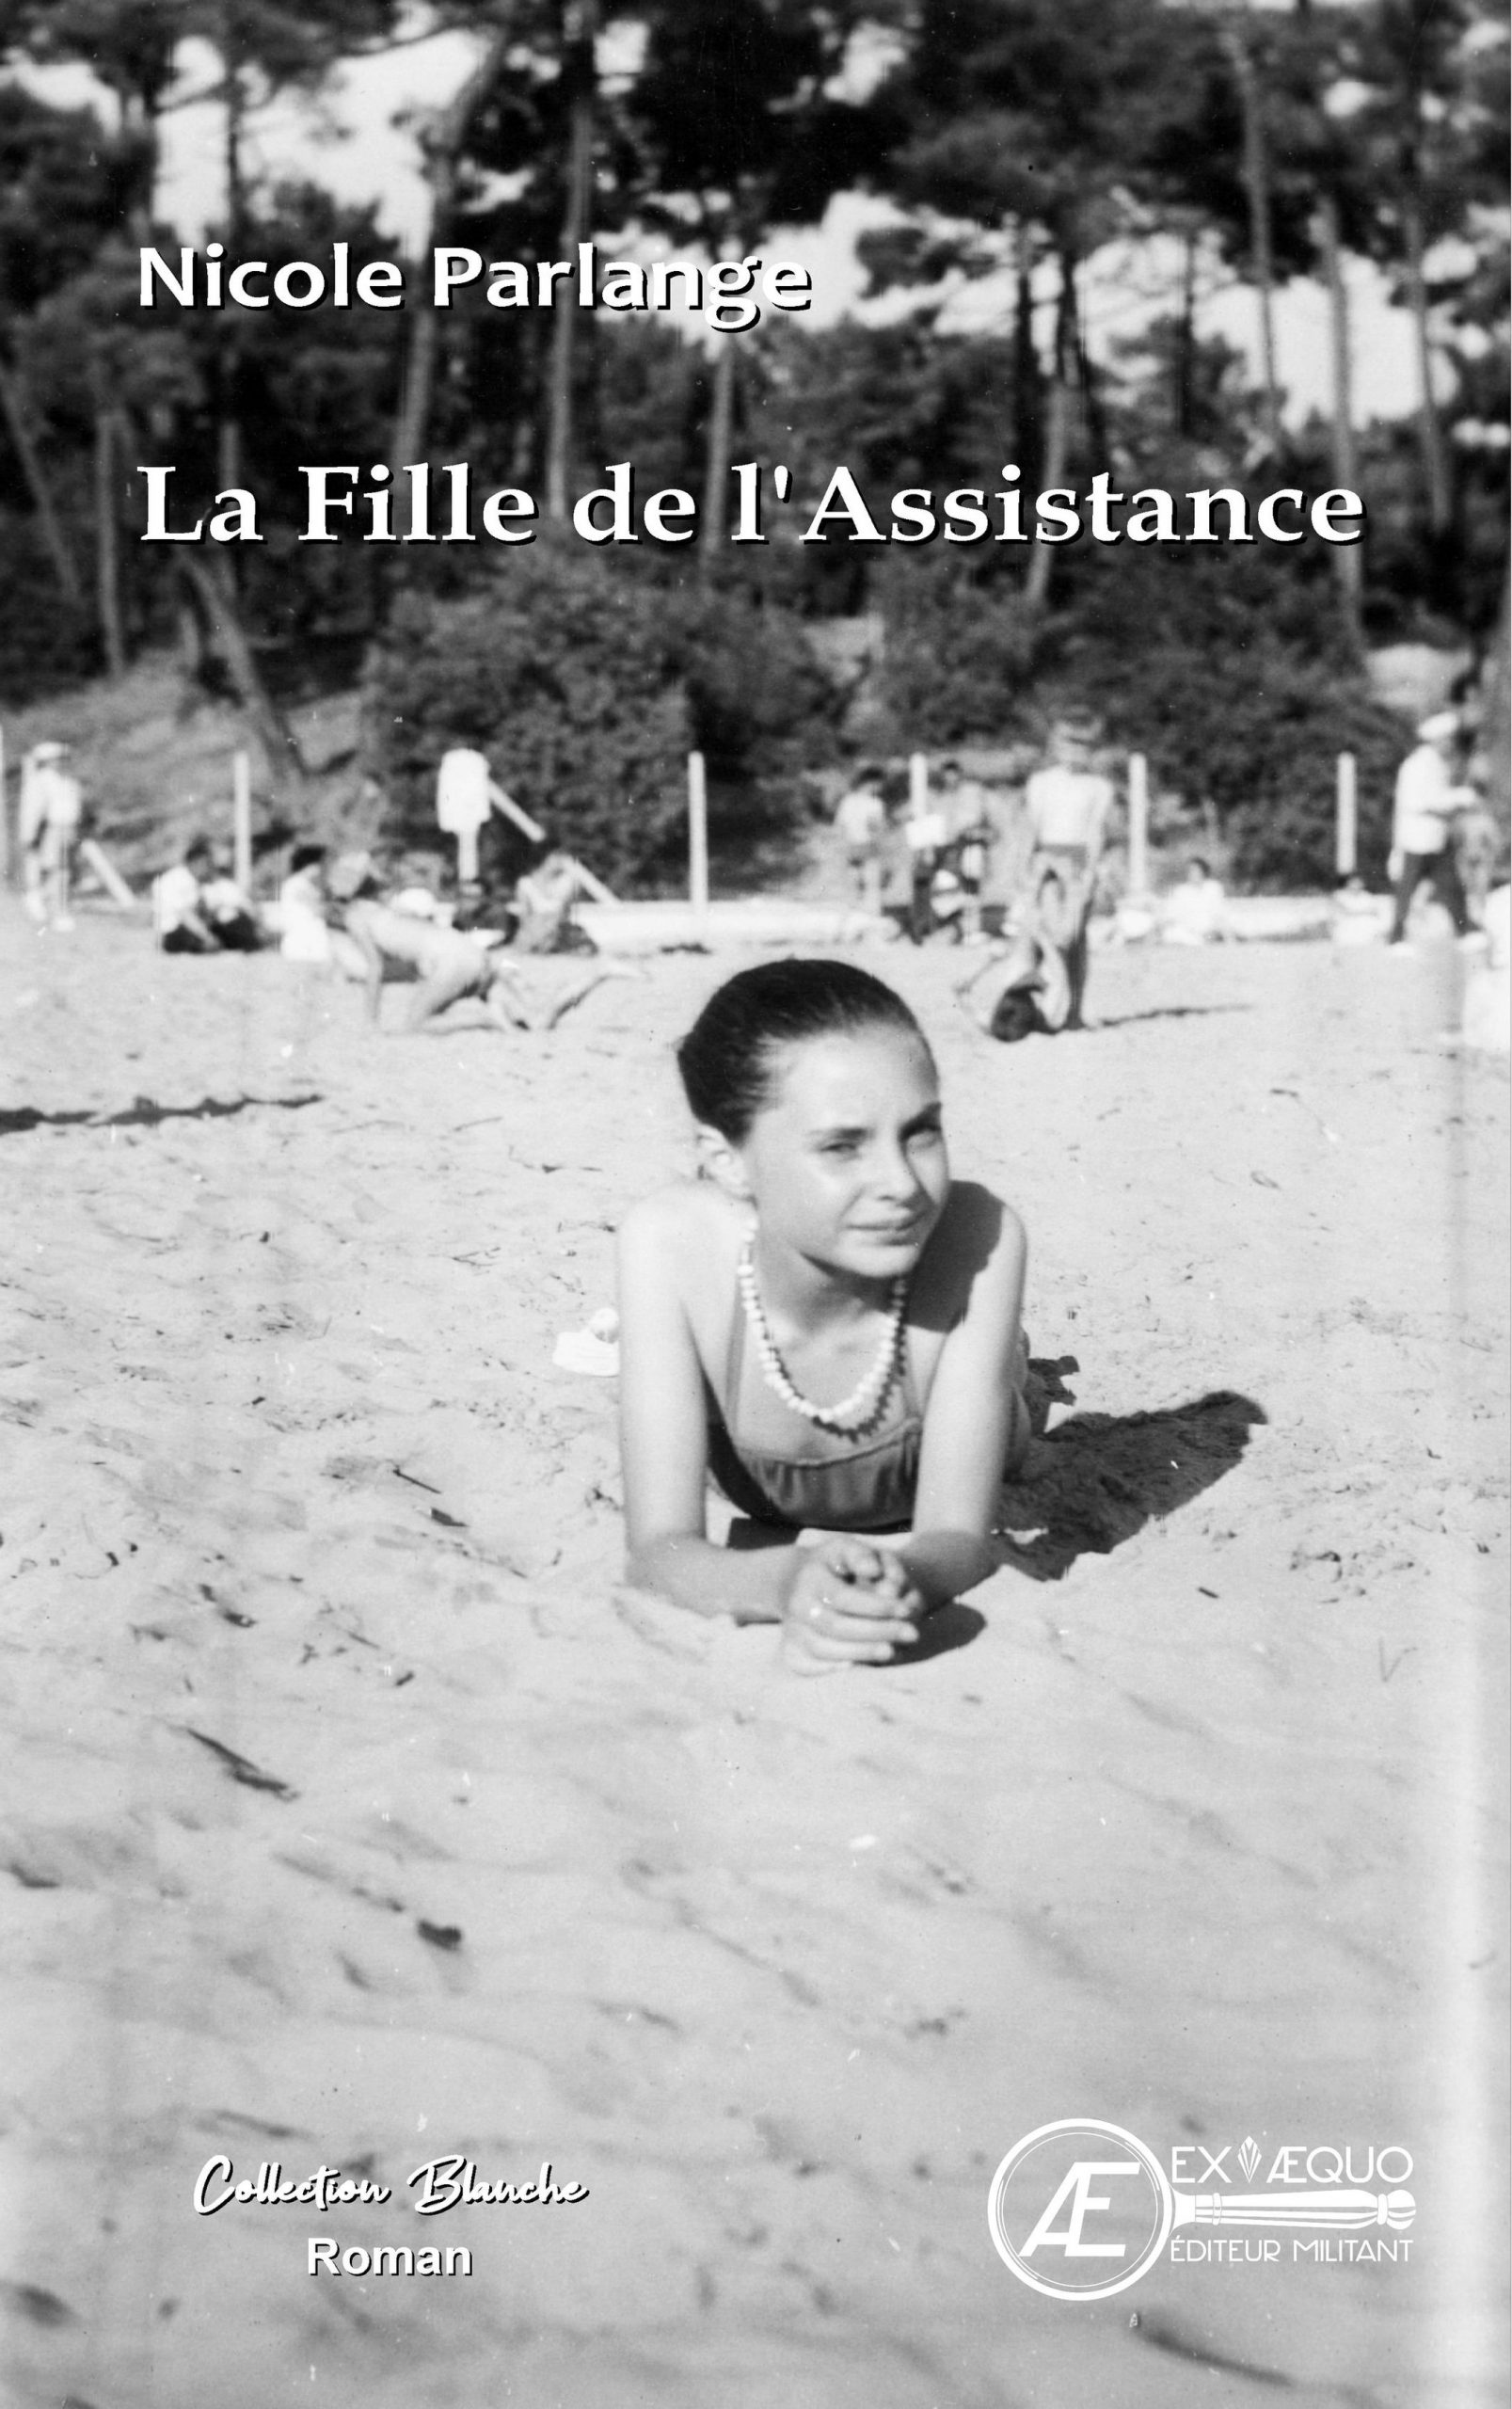 You are currently viewing La fille de l’assistance, de Nicole Parlange